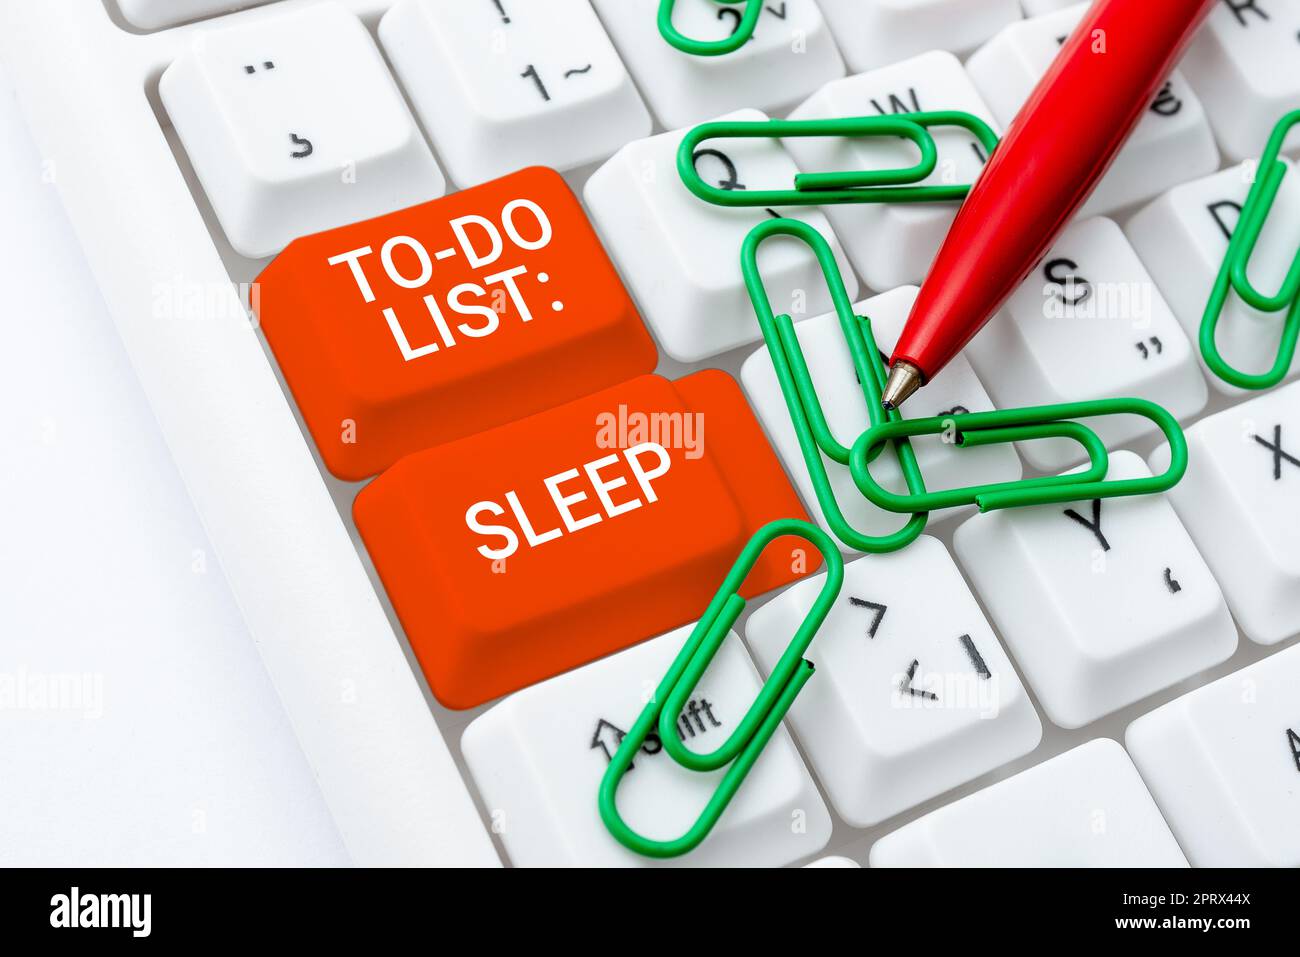 Handgeschriebenes Schild To Do List SleepThings To Do To Do Do Priority-Objekt ist, eine Pause einzulegen. Das Wort, das auf die zu erledigenden Aufgaben geschrieben wurde, ist, sich auszuruhen Stockfoto